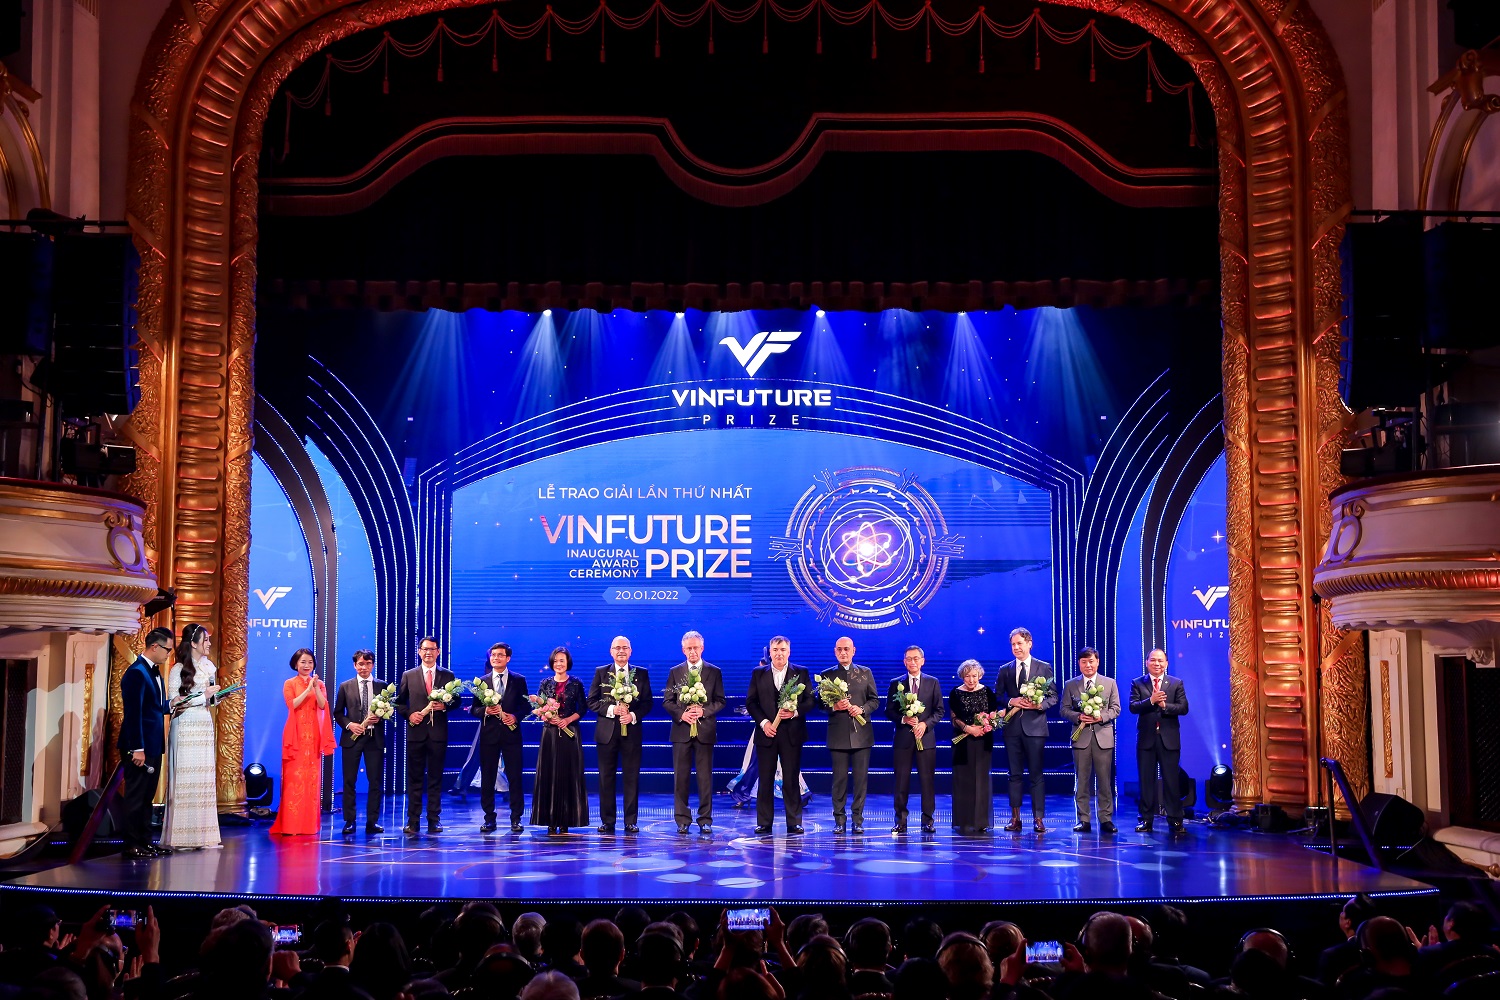 VinFuture Award Ceremony 2021 at Hanoi Opera House